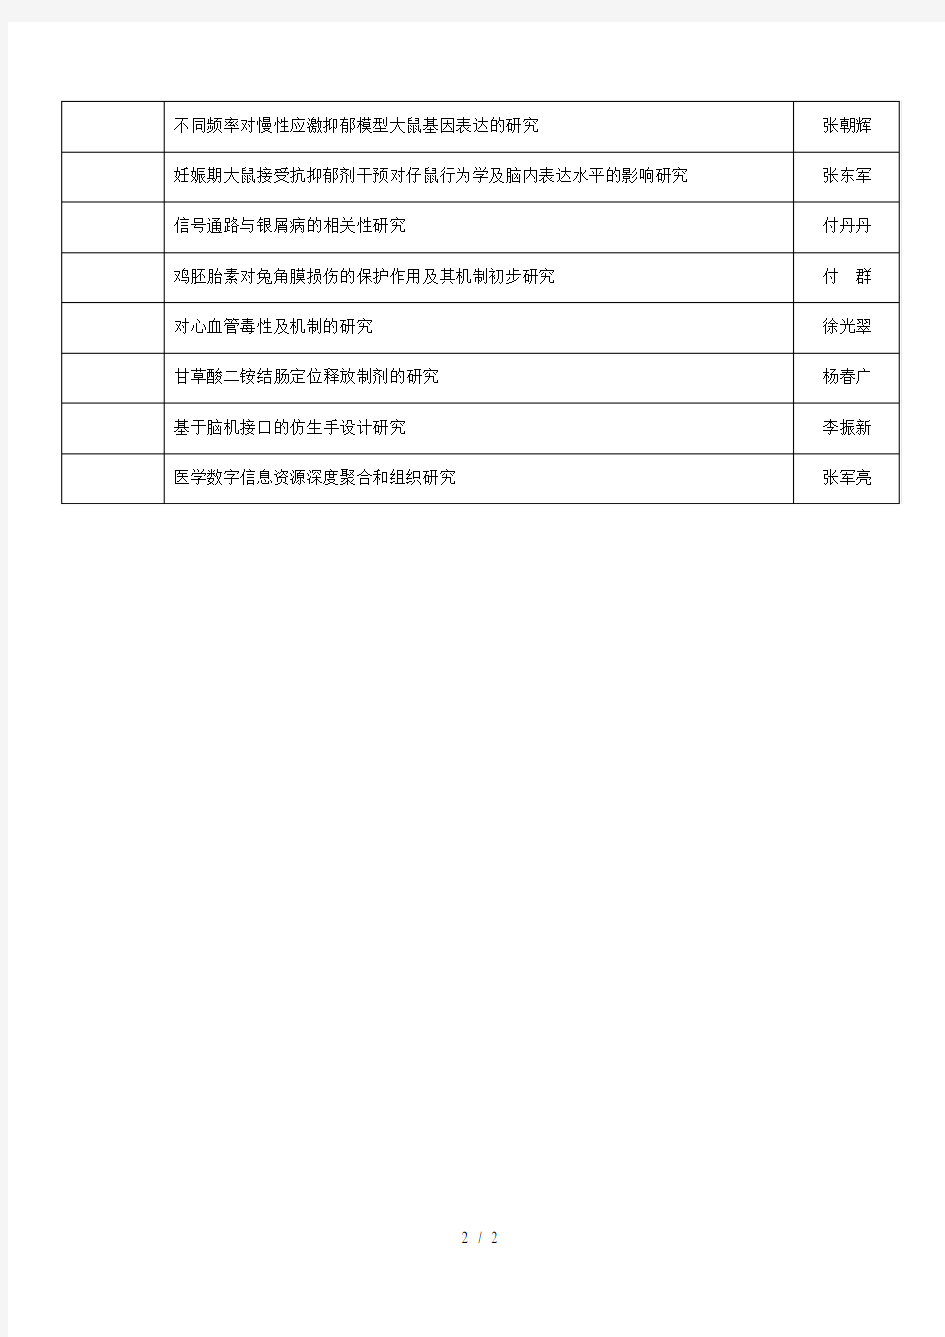 度河南省教育厅科学技术研究重点项目立项清单